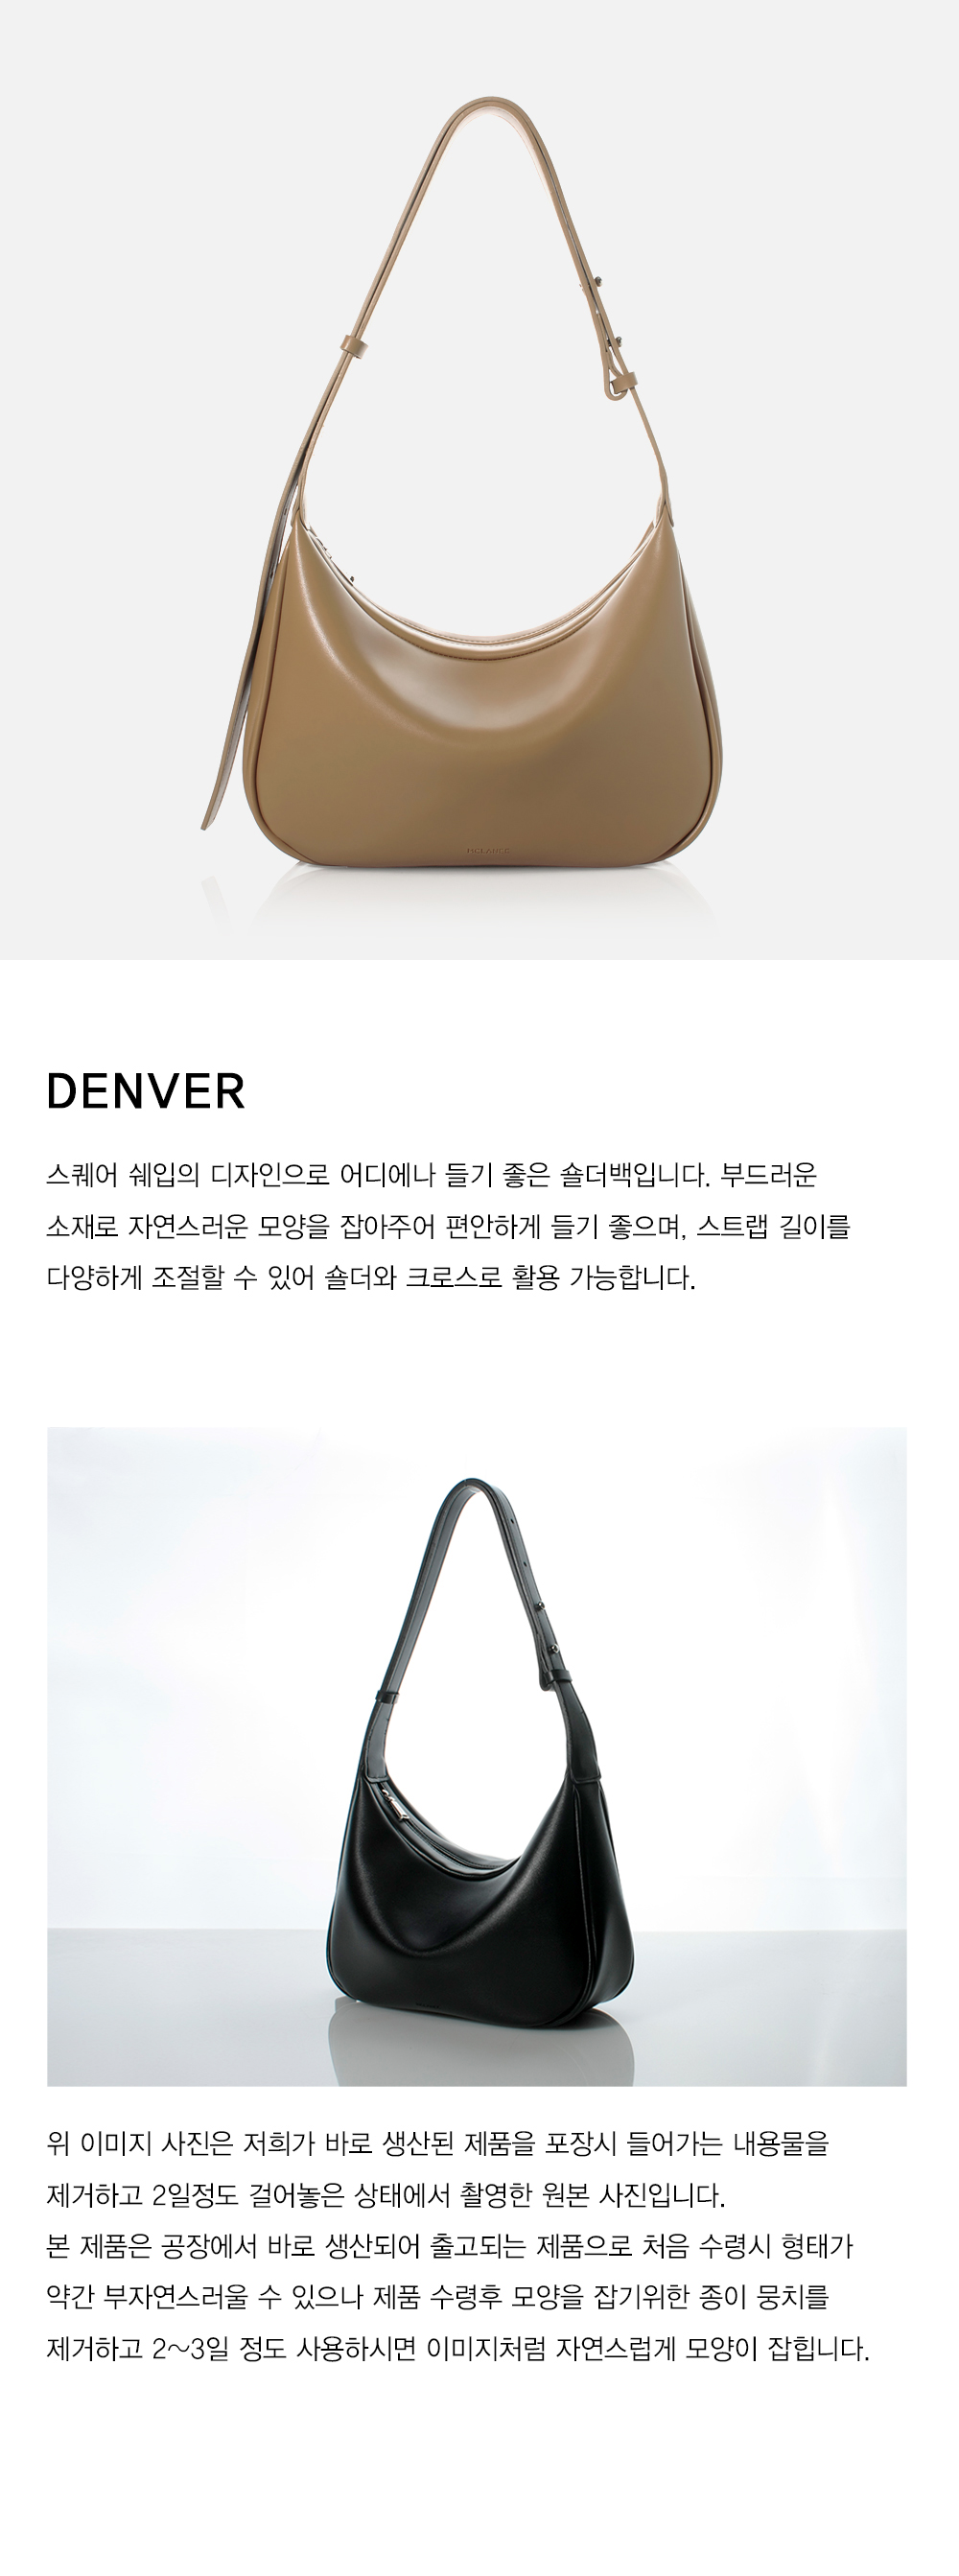 [MCLANEE] Denver shoulder and cross bag - Beige